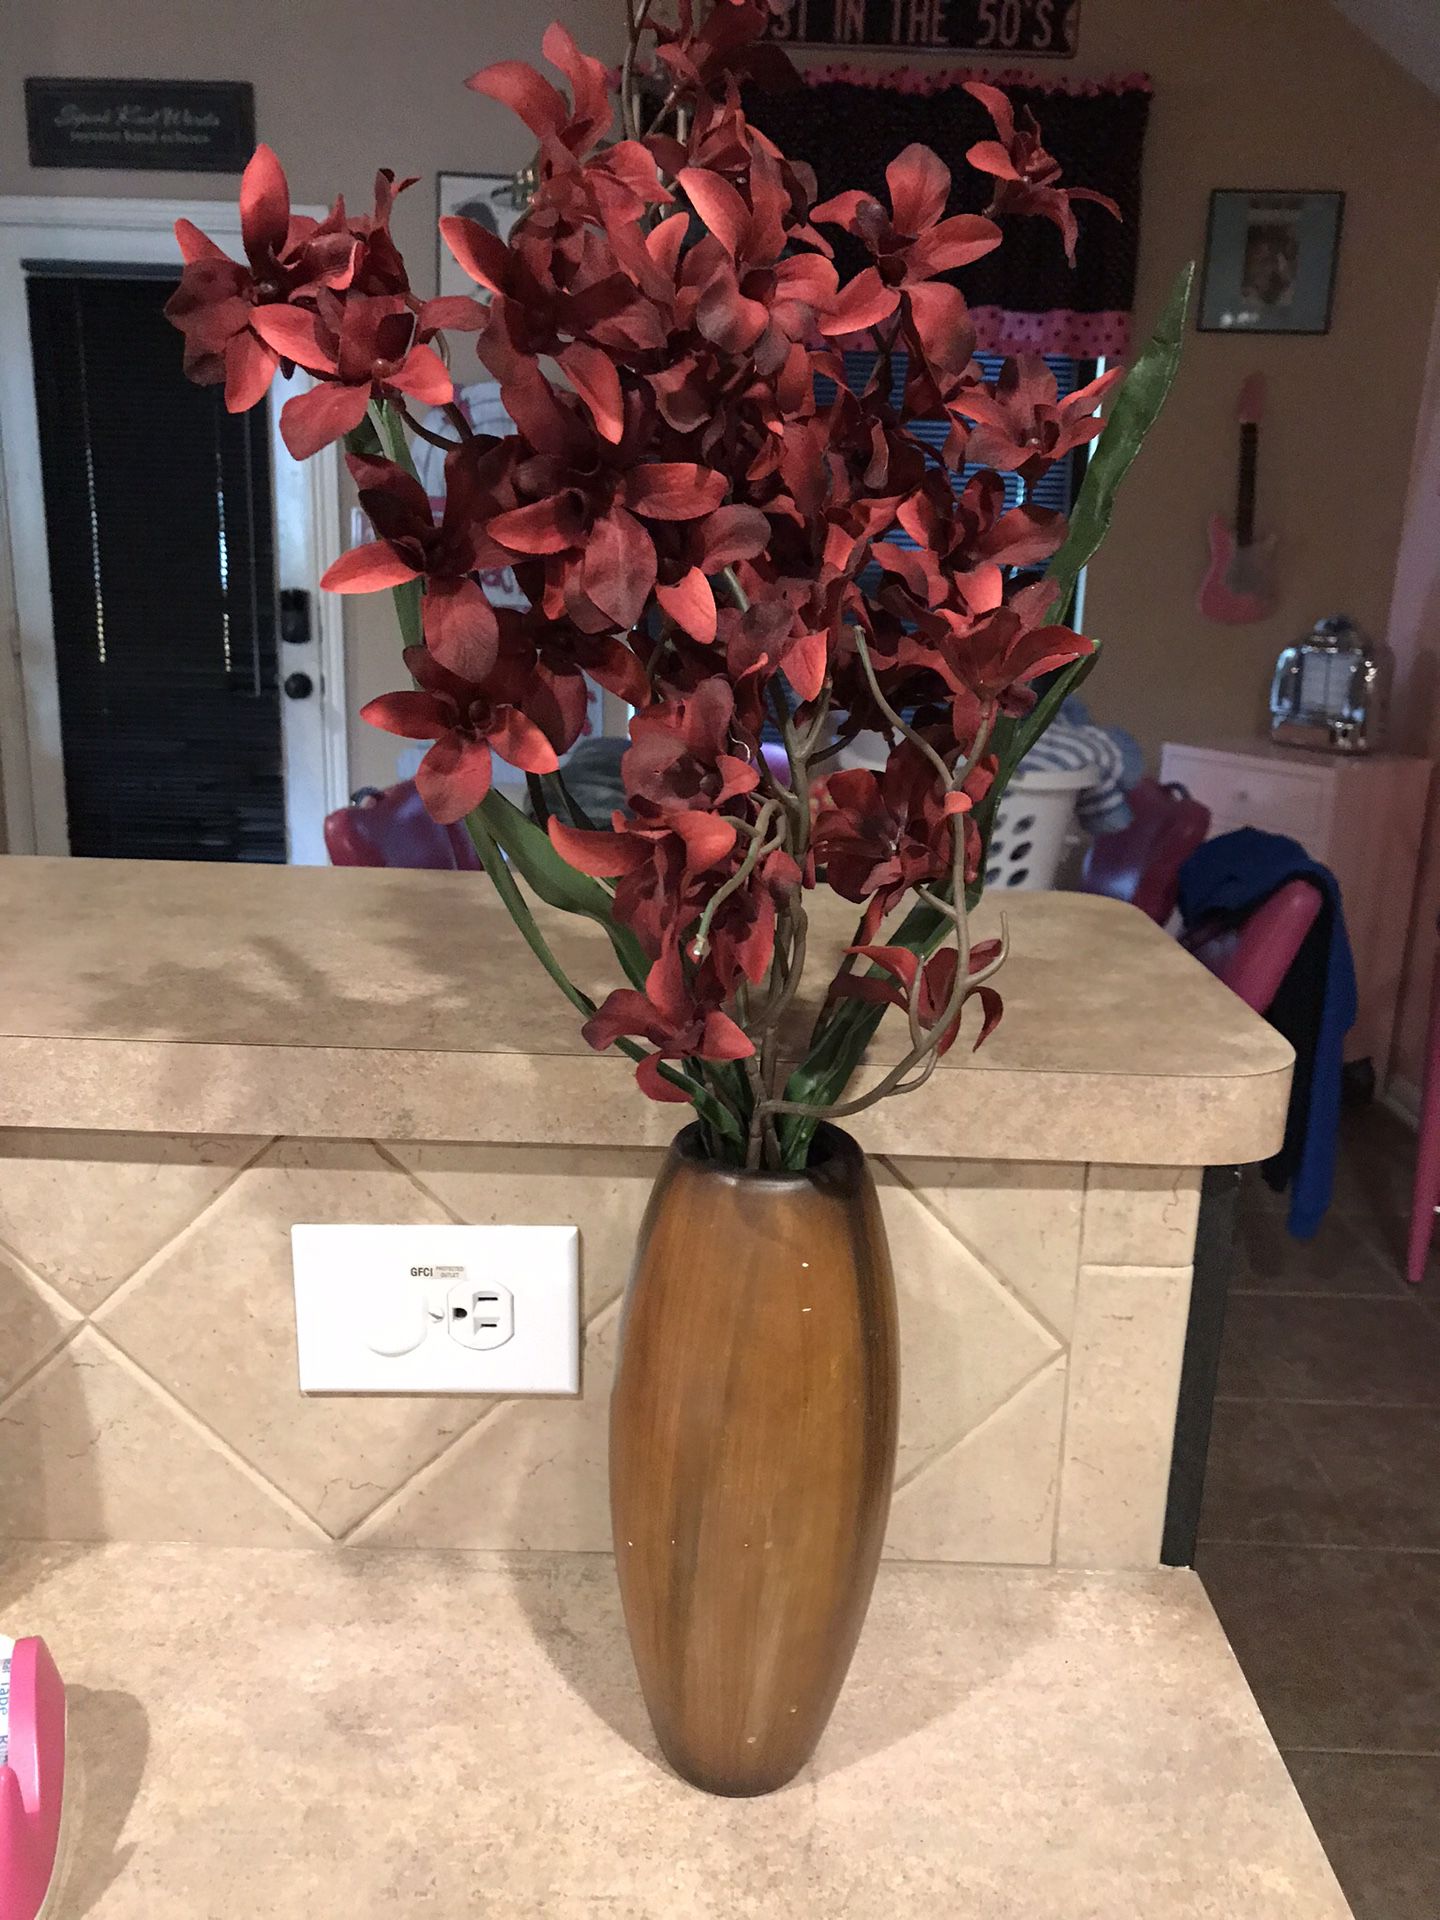 Brown Ceramic Vase with Burgundy Flowers